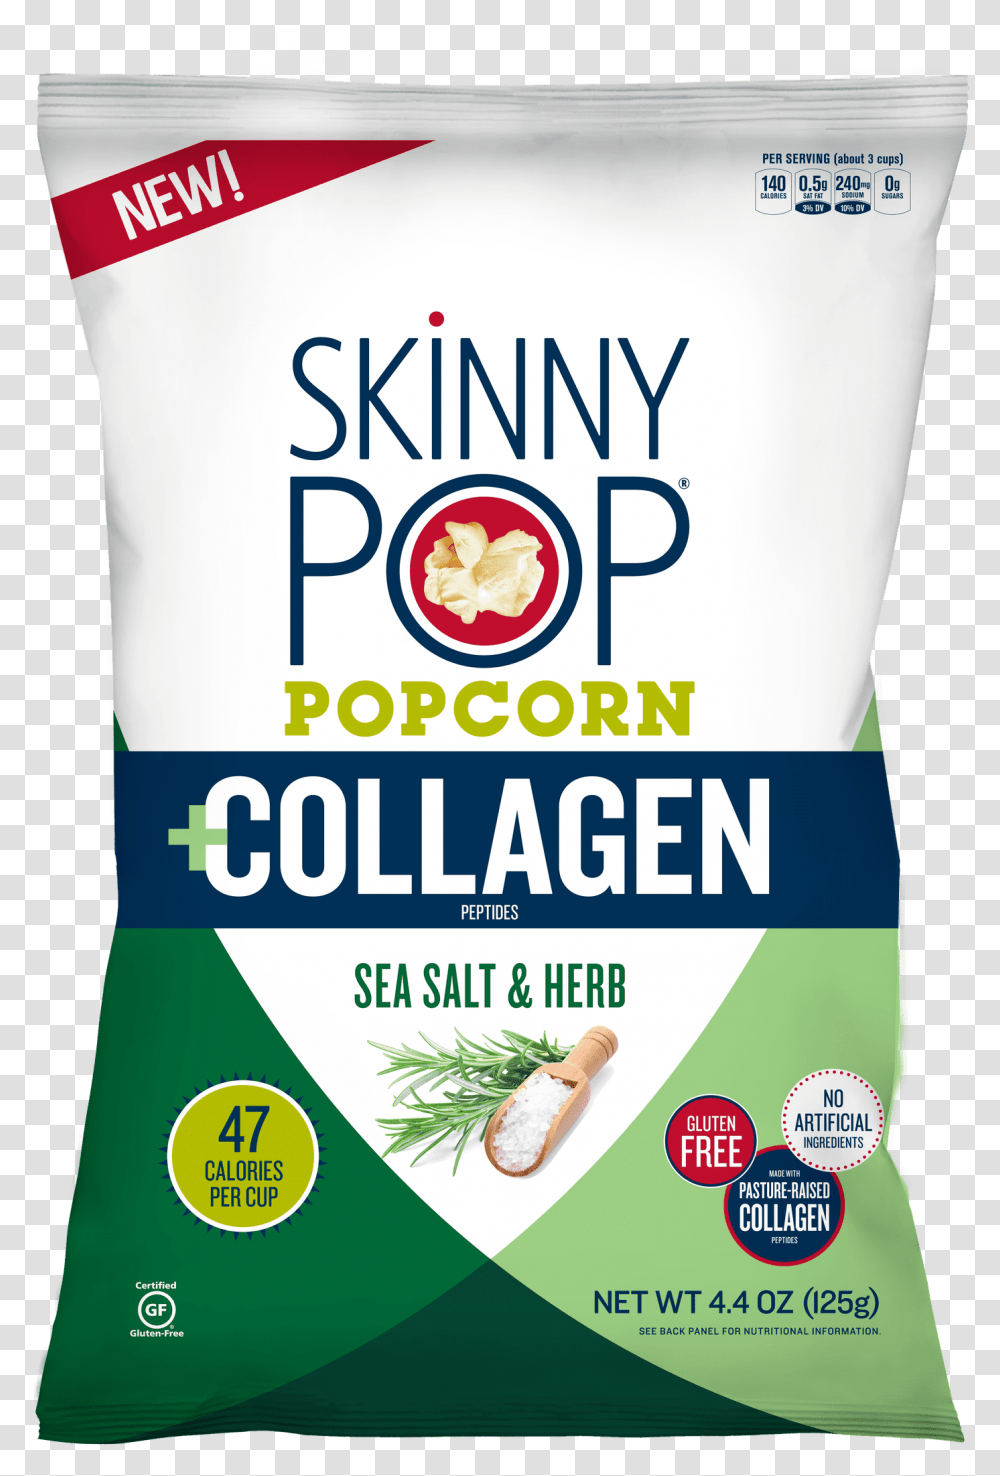 Skinnypop Popcorn Collagen Bag Skinny Pop Collagen Popcorn, Food, Label, Plant Transparent Png